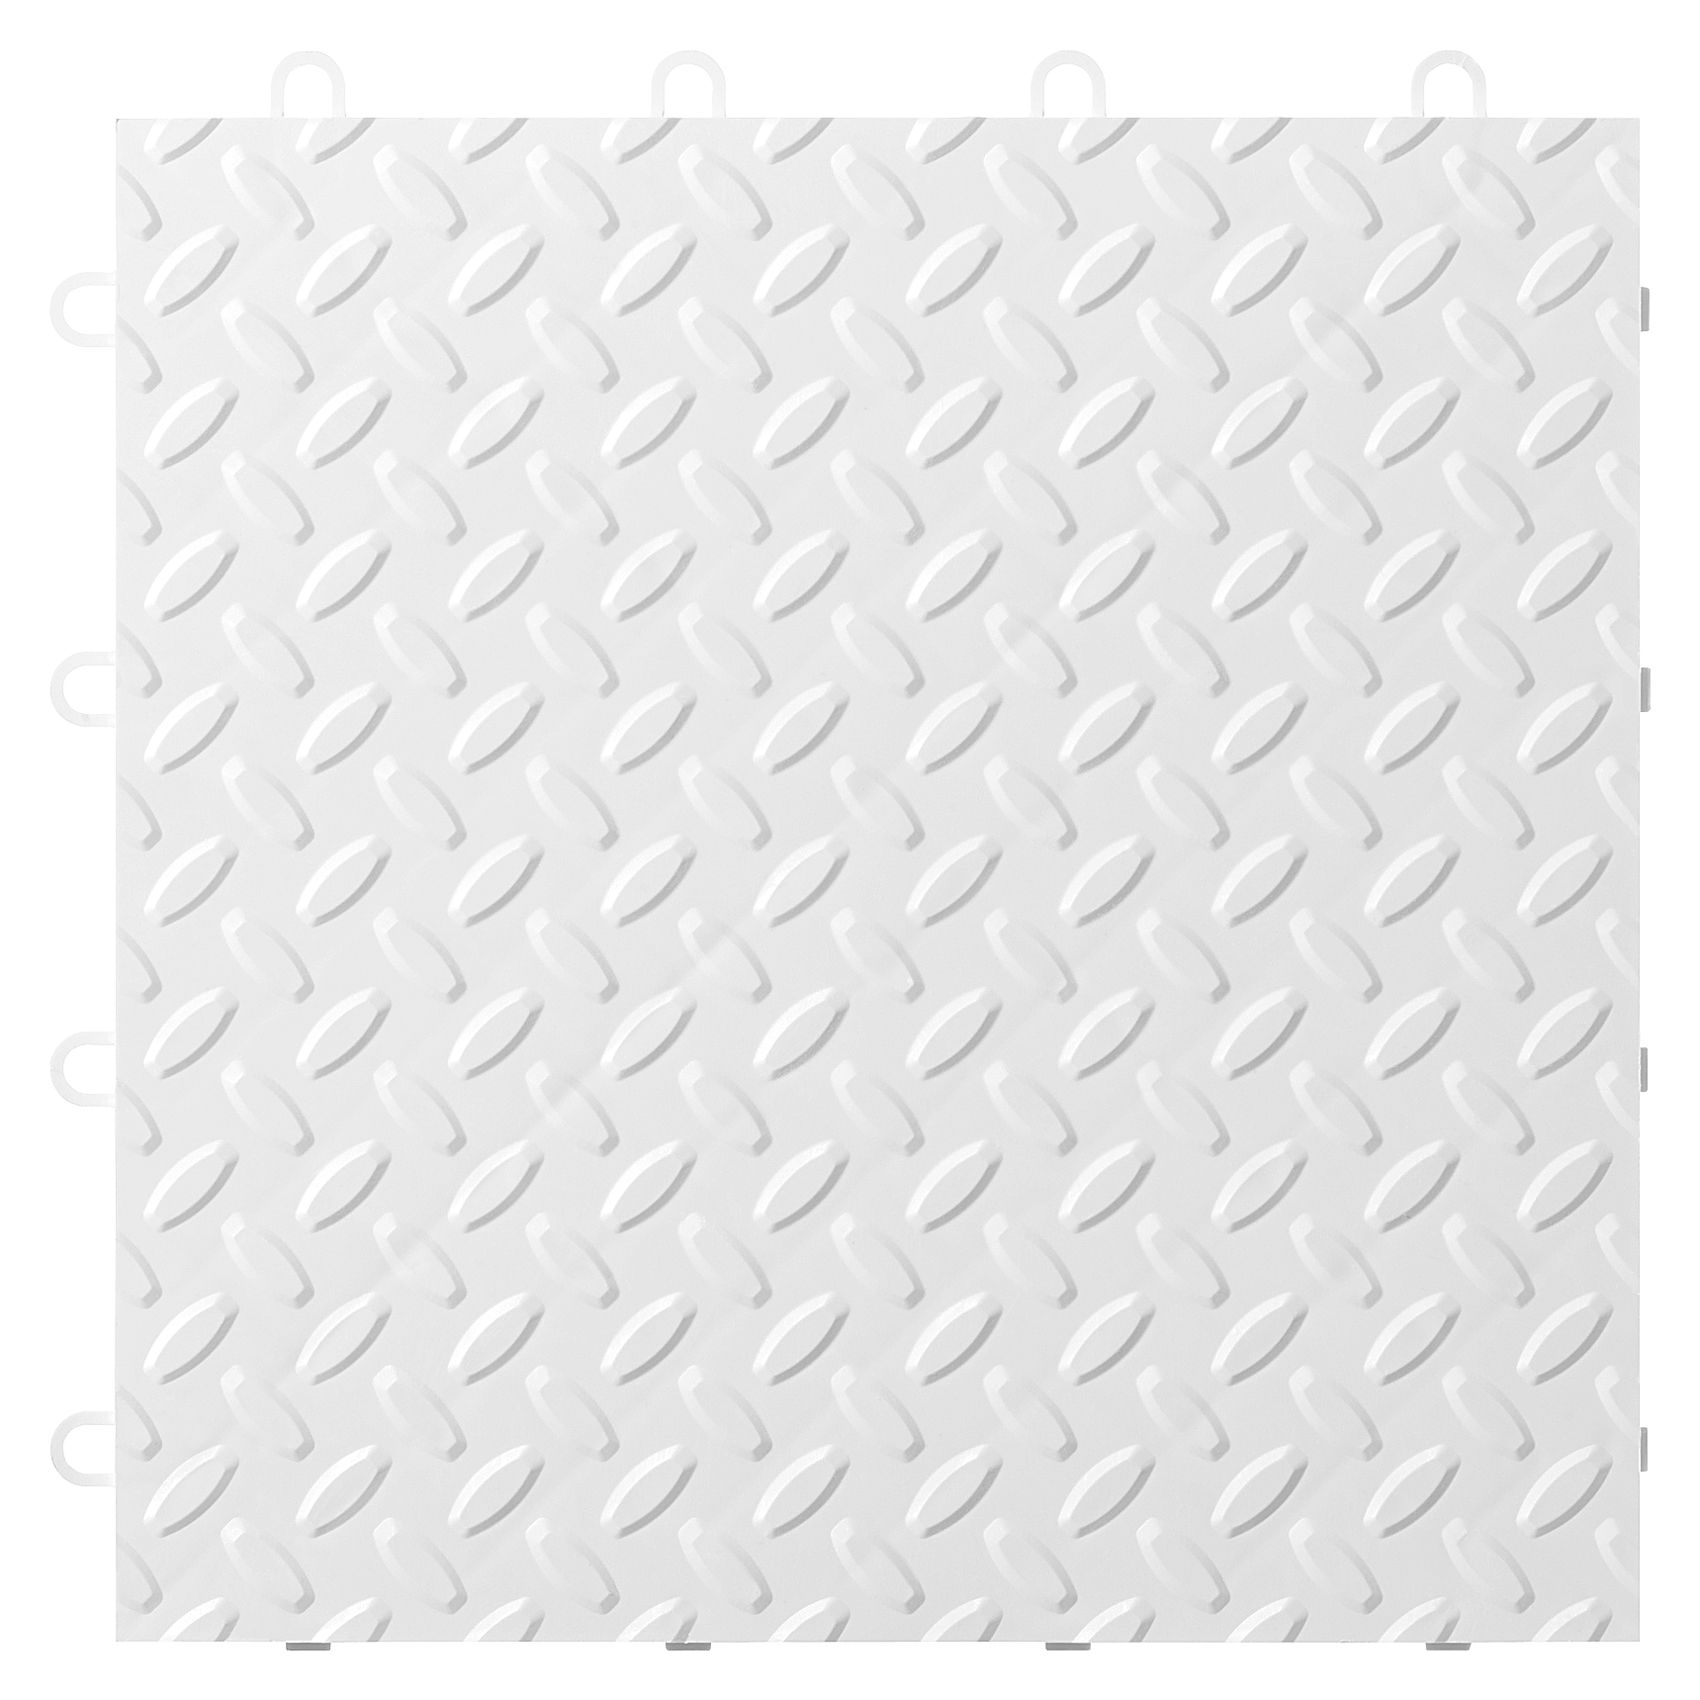 Gladiator 24-Pack White Garage Floor Tile